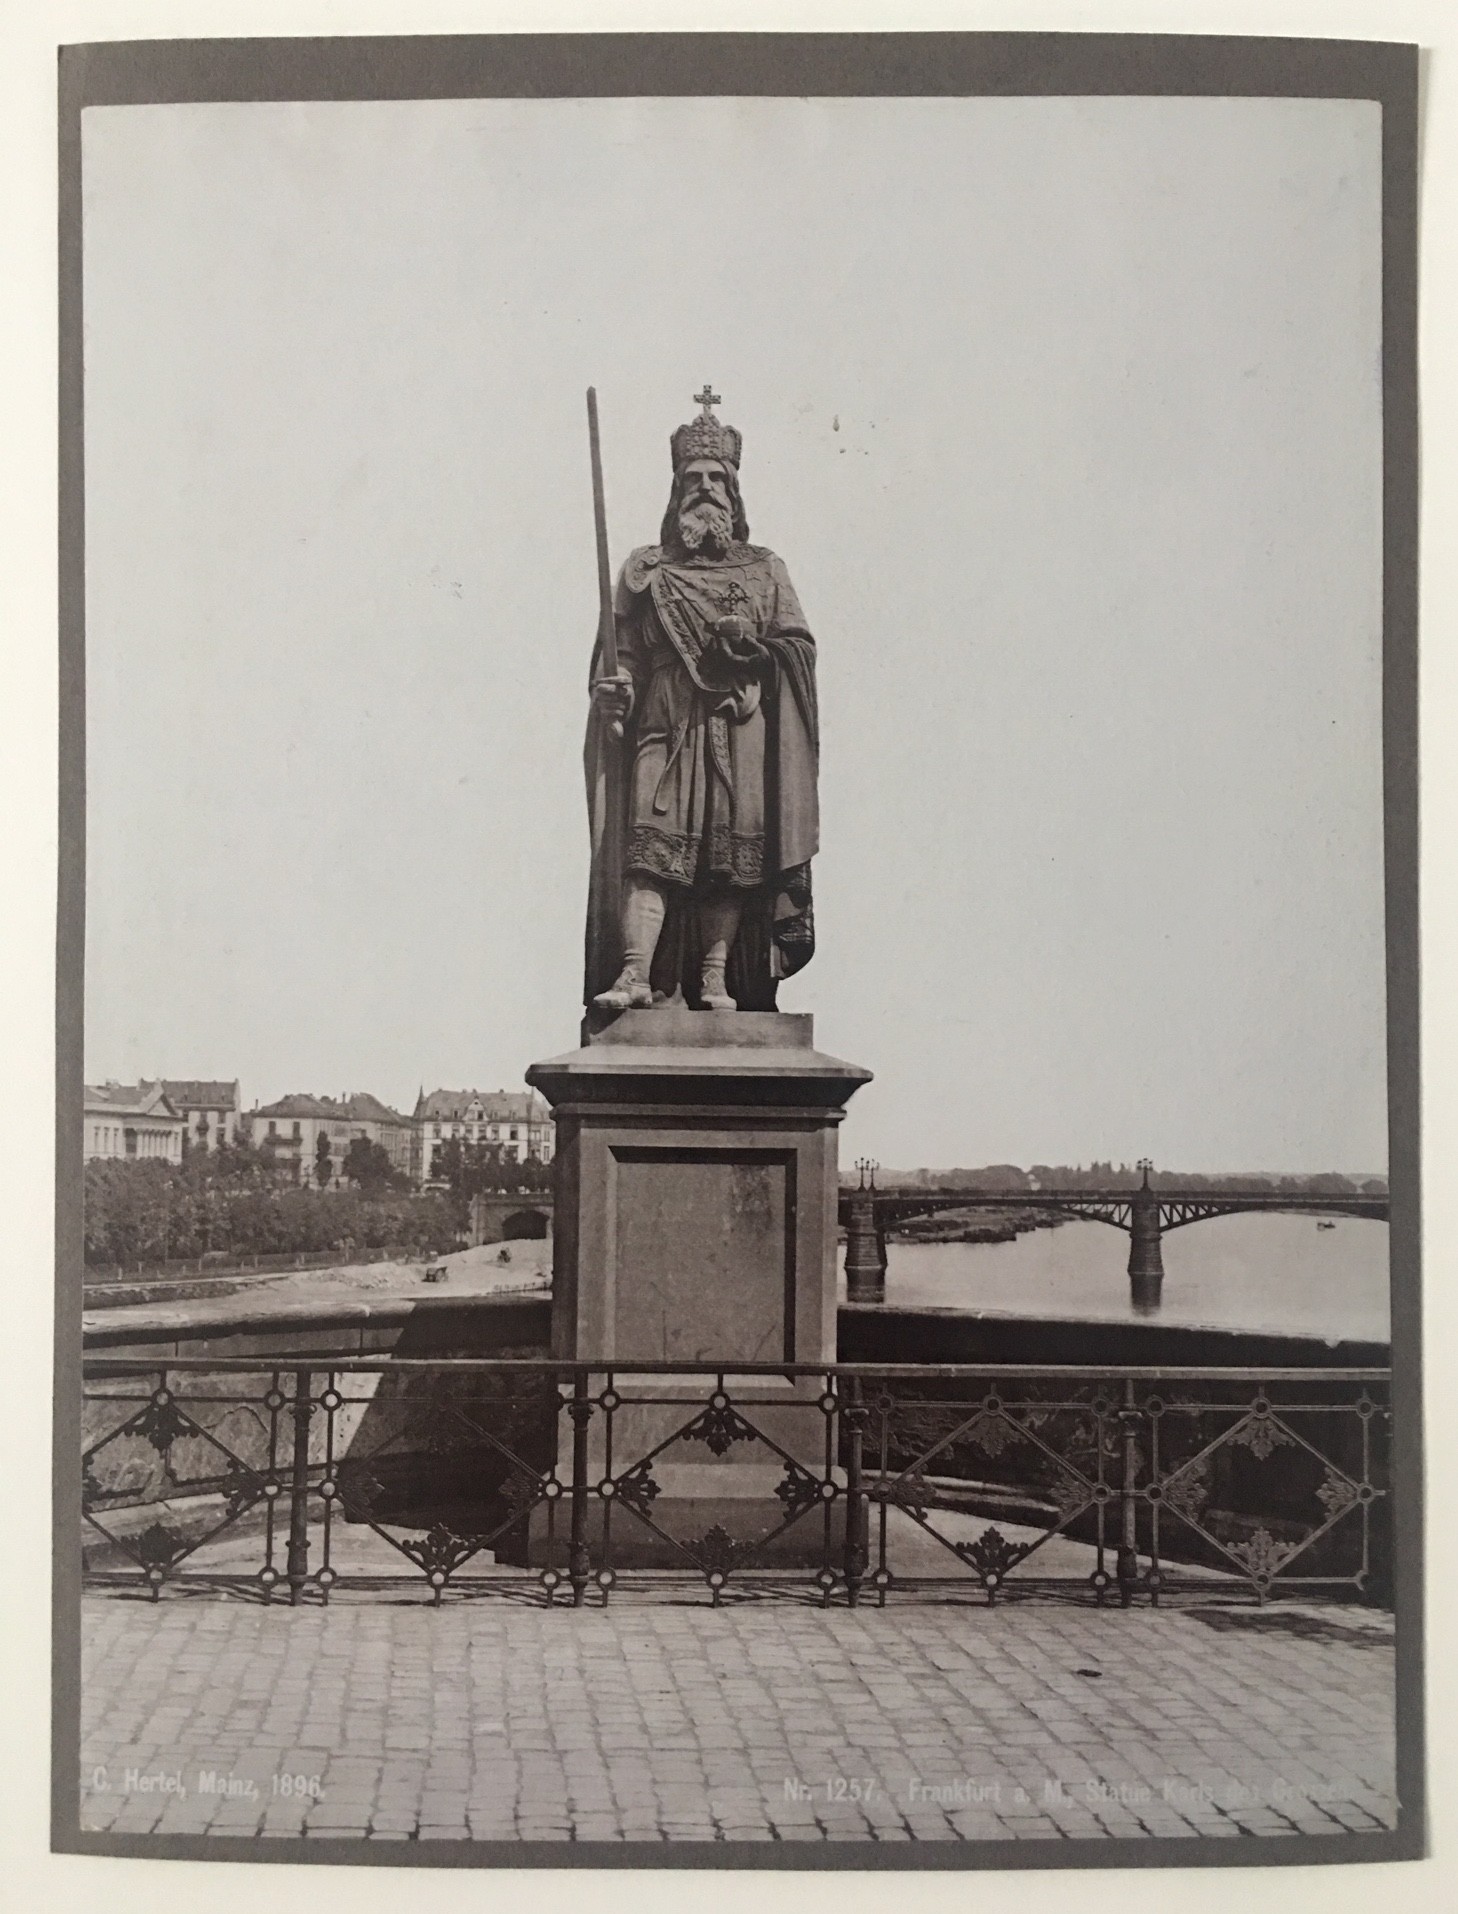 Standbild Karls des Großen auf der Alten Brücke, Frankfurt am Main 1896 (Regionalgeschichtliche Sammlung Dr. Stefan Naas CC BY-NC-SA)